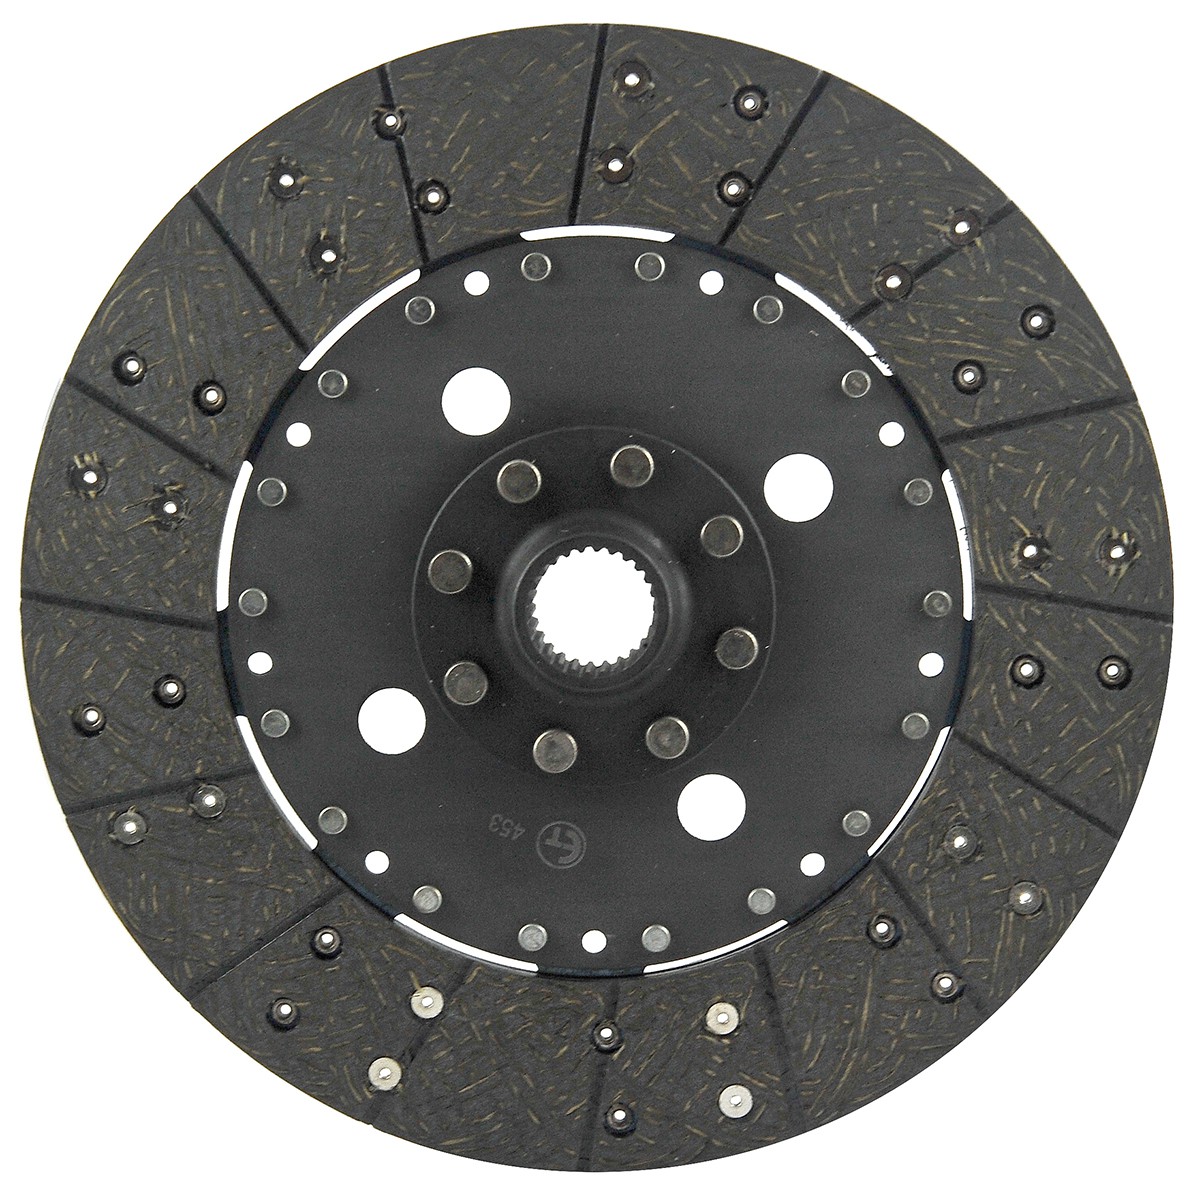 Clutch disc / 260 mm / 26T / Yanmar EF453T/EF494T / 198440-21401 / 6-05-100-06